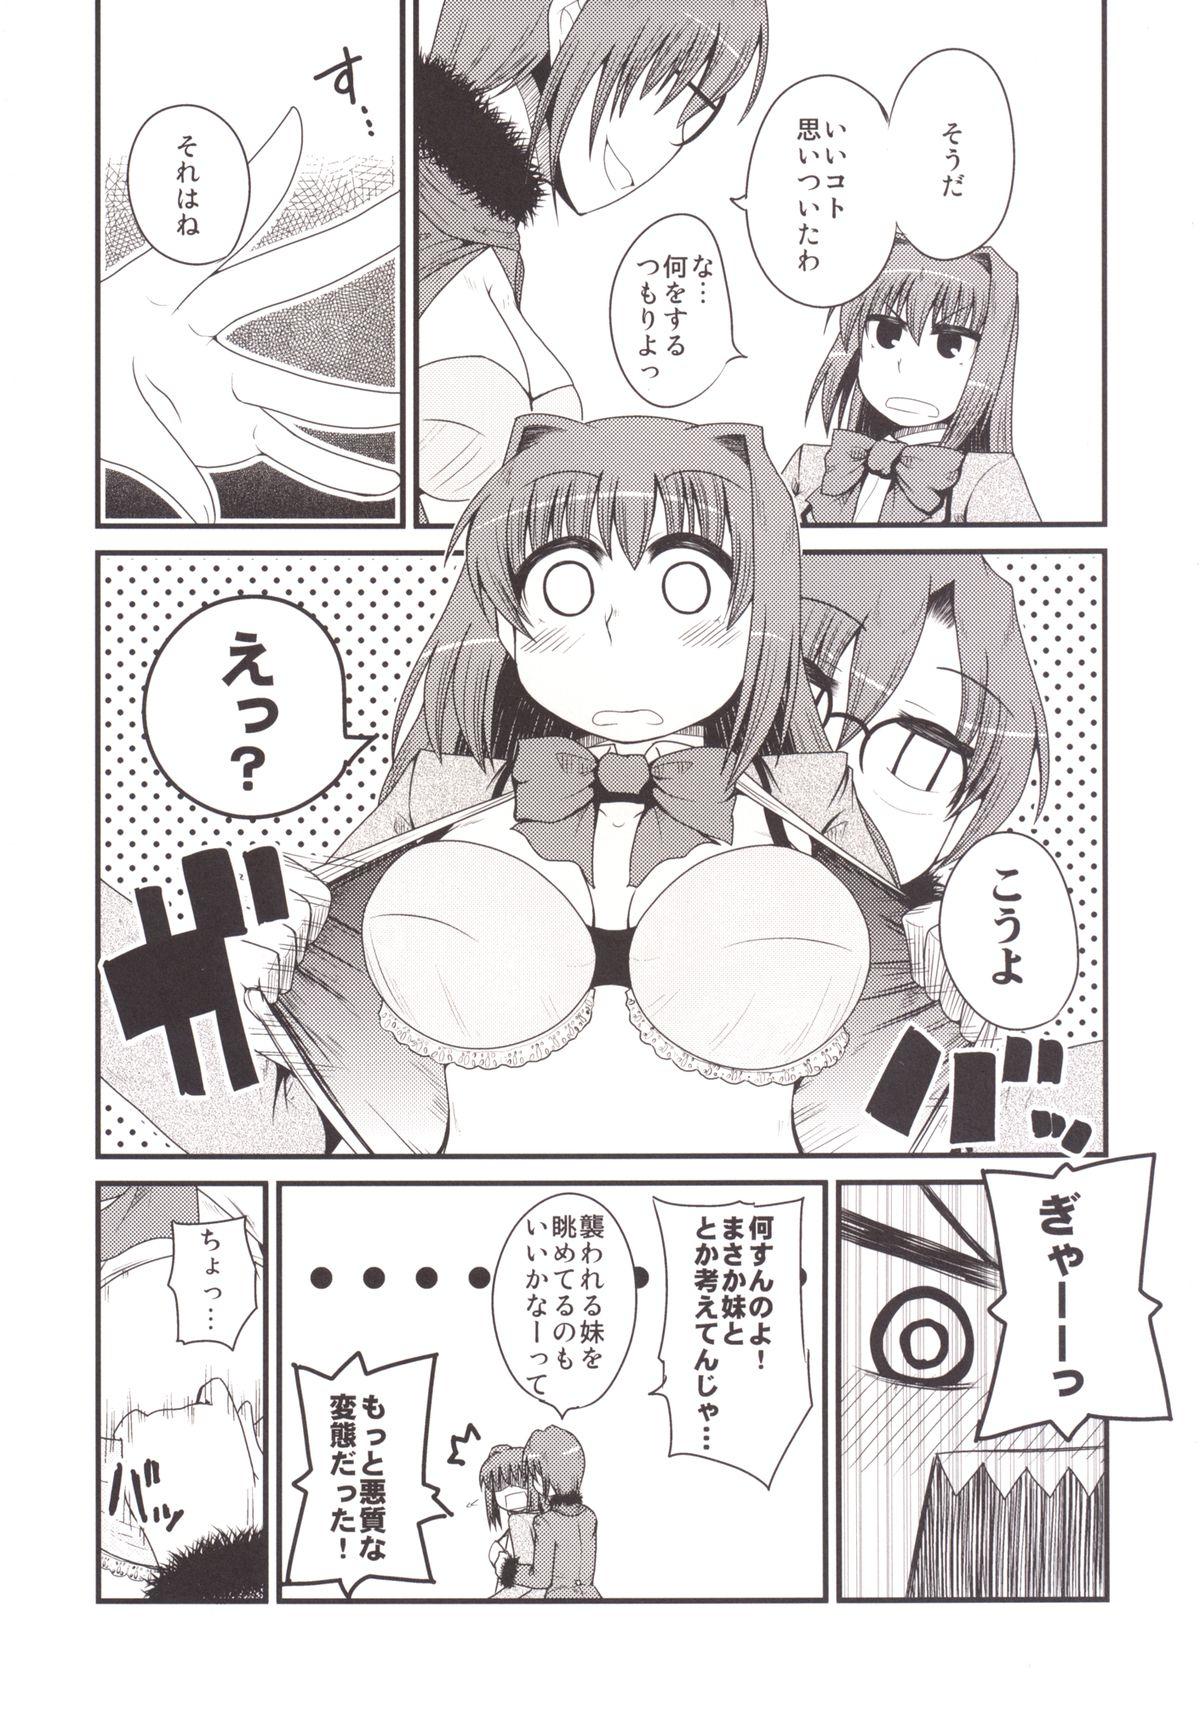 Sex Party Ittsu Main 2 - Mahou tsukai no yoru Morrita - Page 9